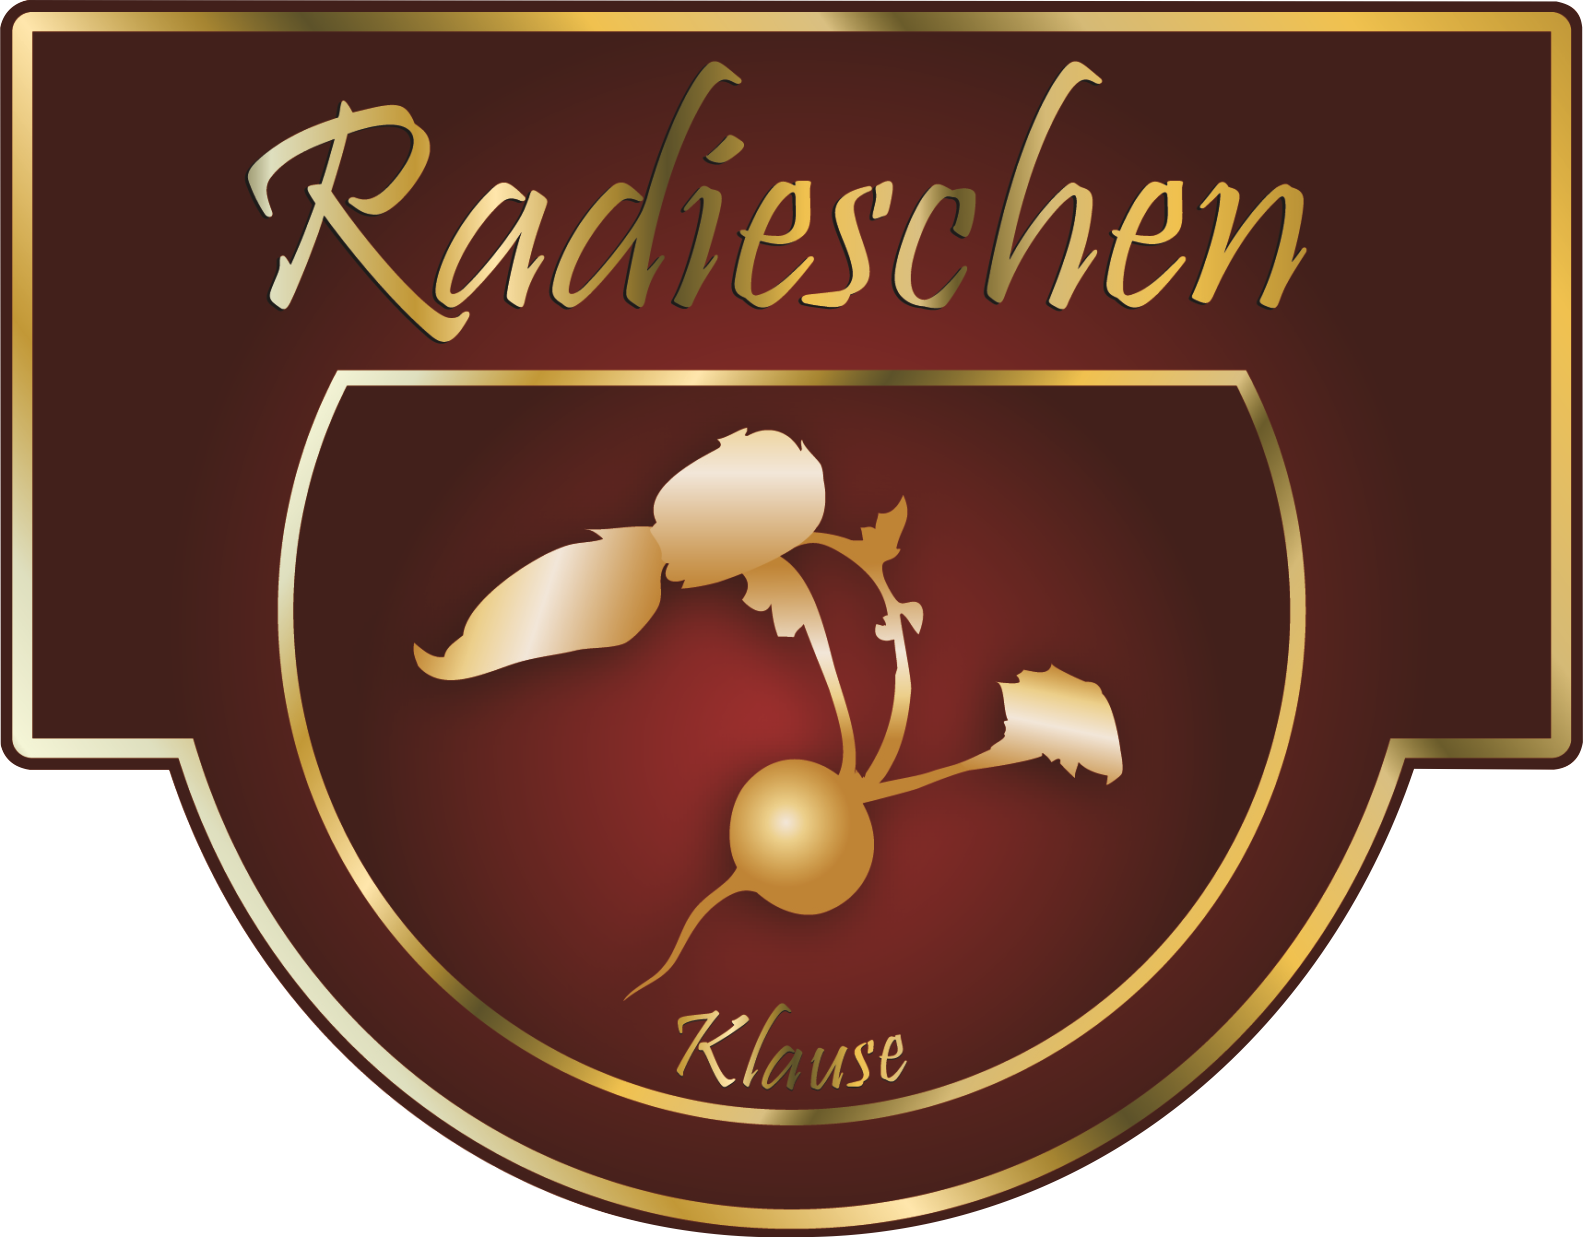 Restaurant Radieschen